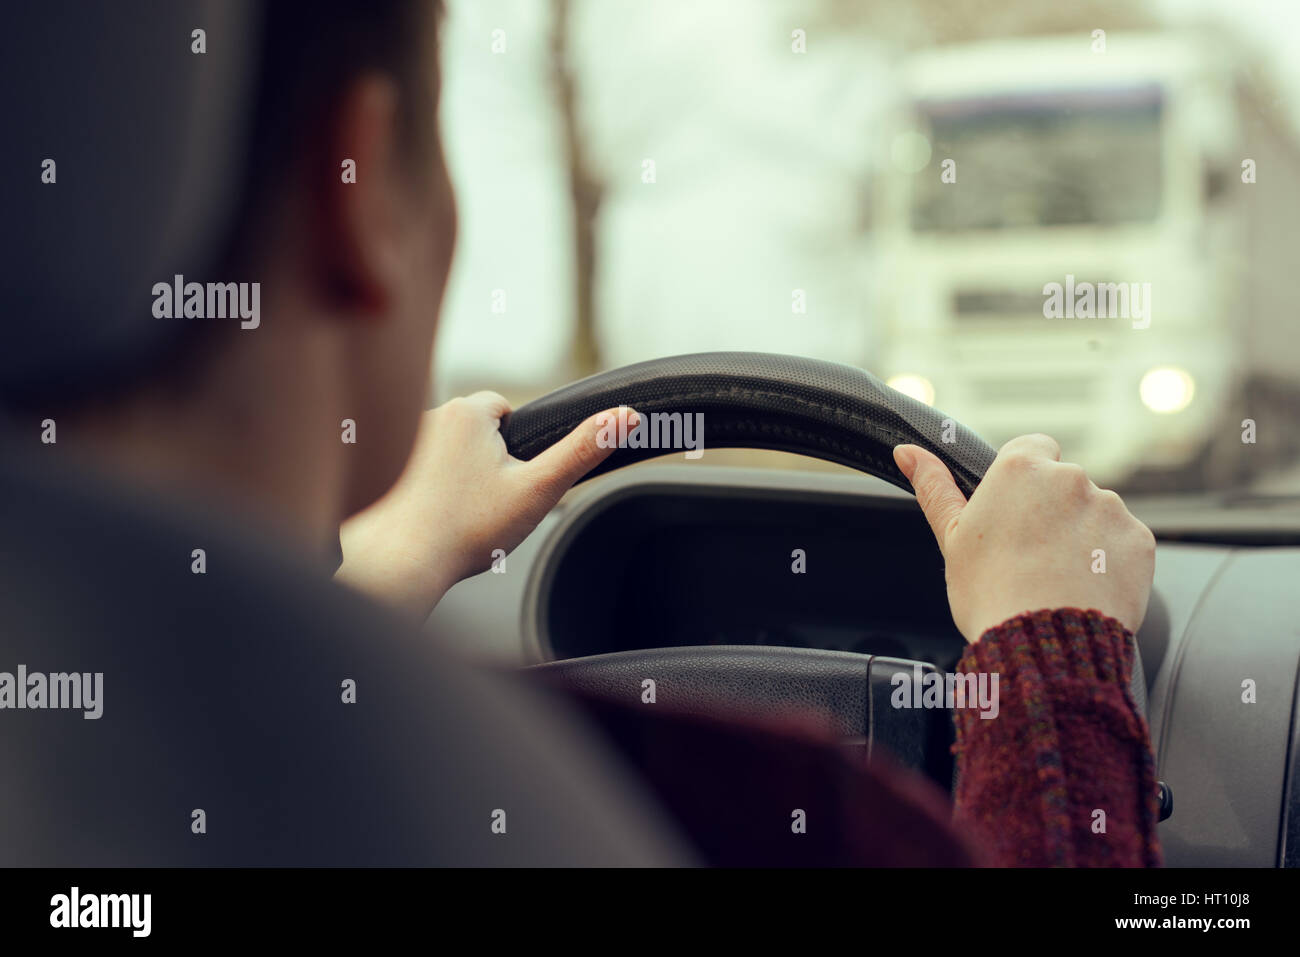 Frau fährt Auto in Richtung eines großen LKW auf der Straße, selektiven Fokus auf Händen greifen das Lenkrad des Fahrzeugs, Retro-getönten Bild Stockfoto